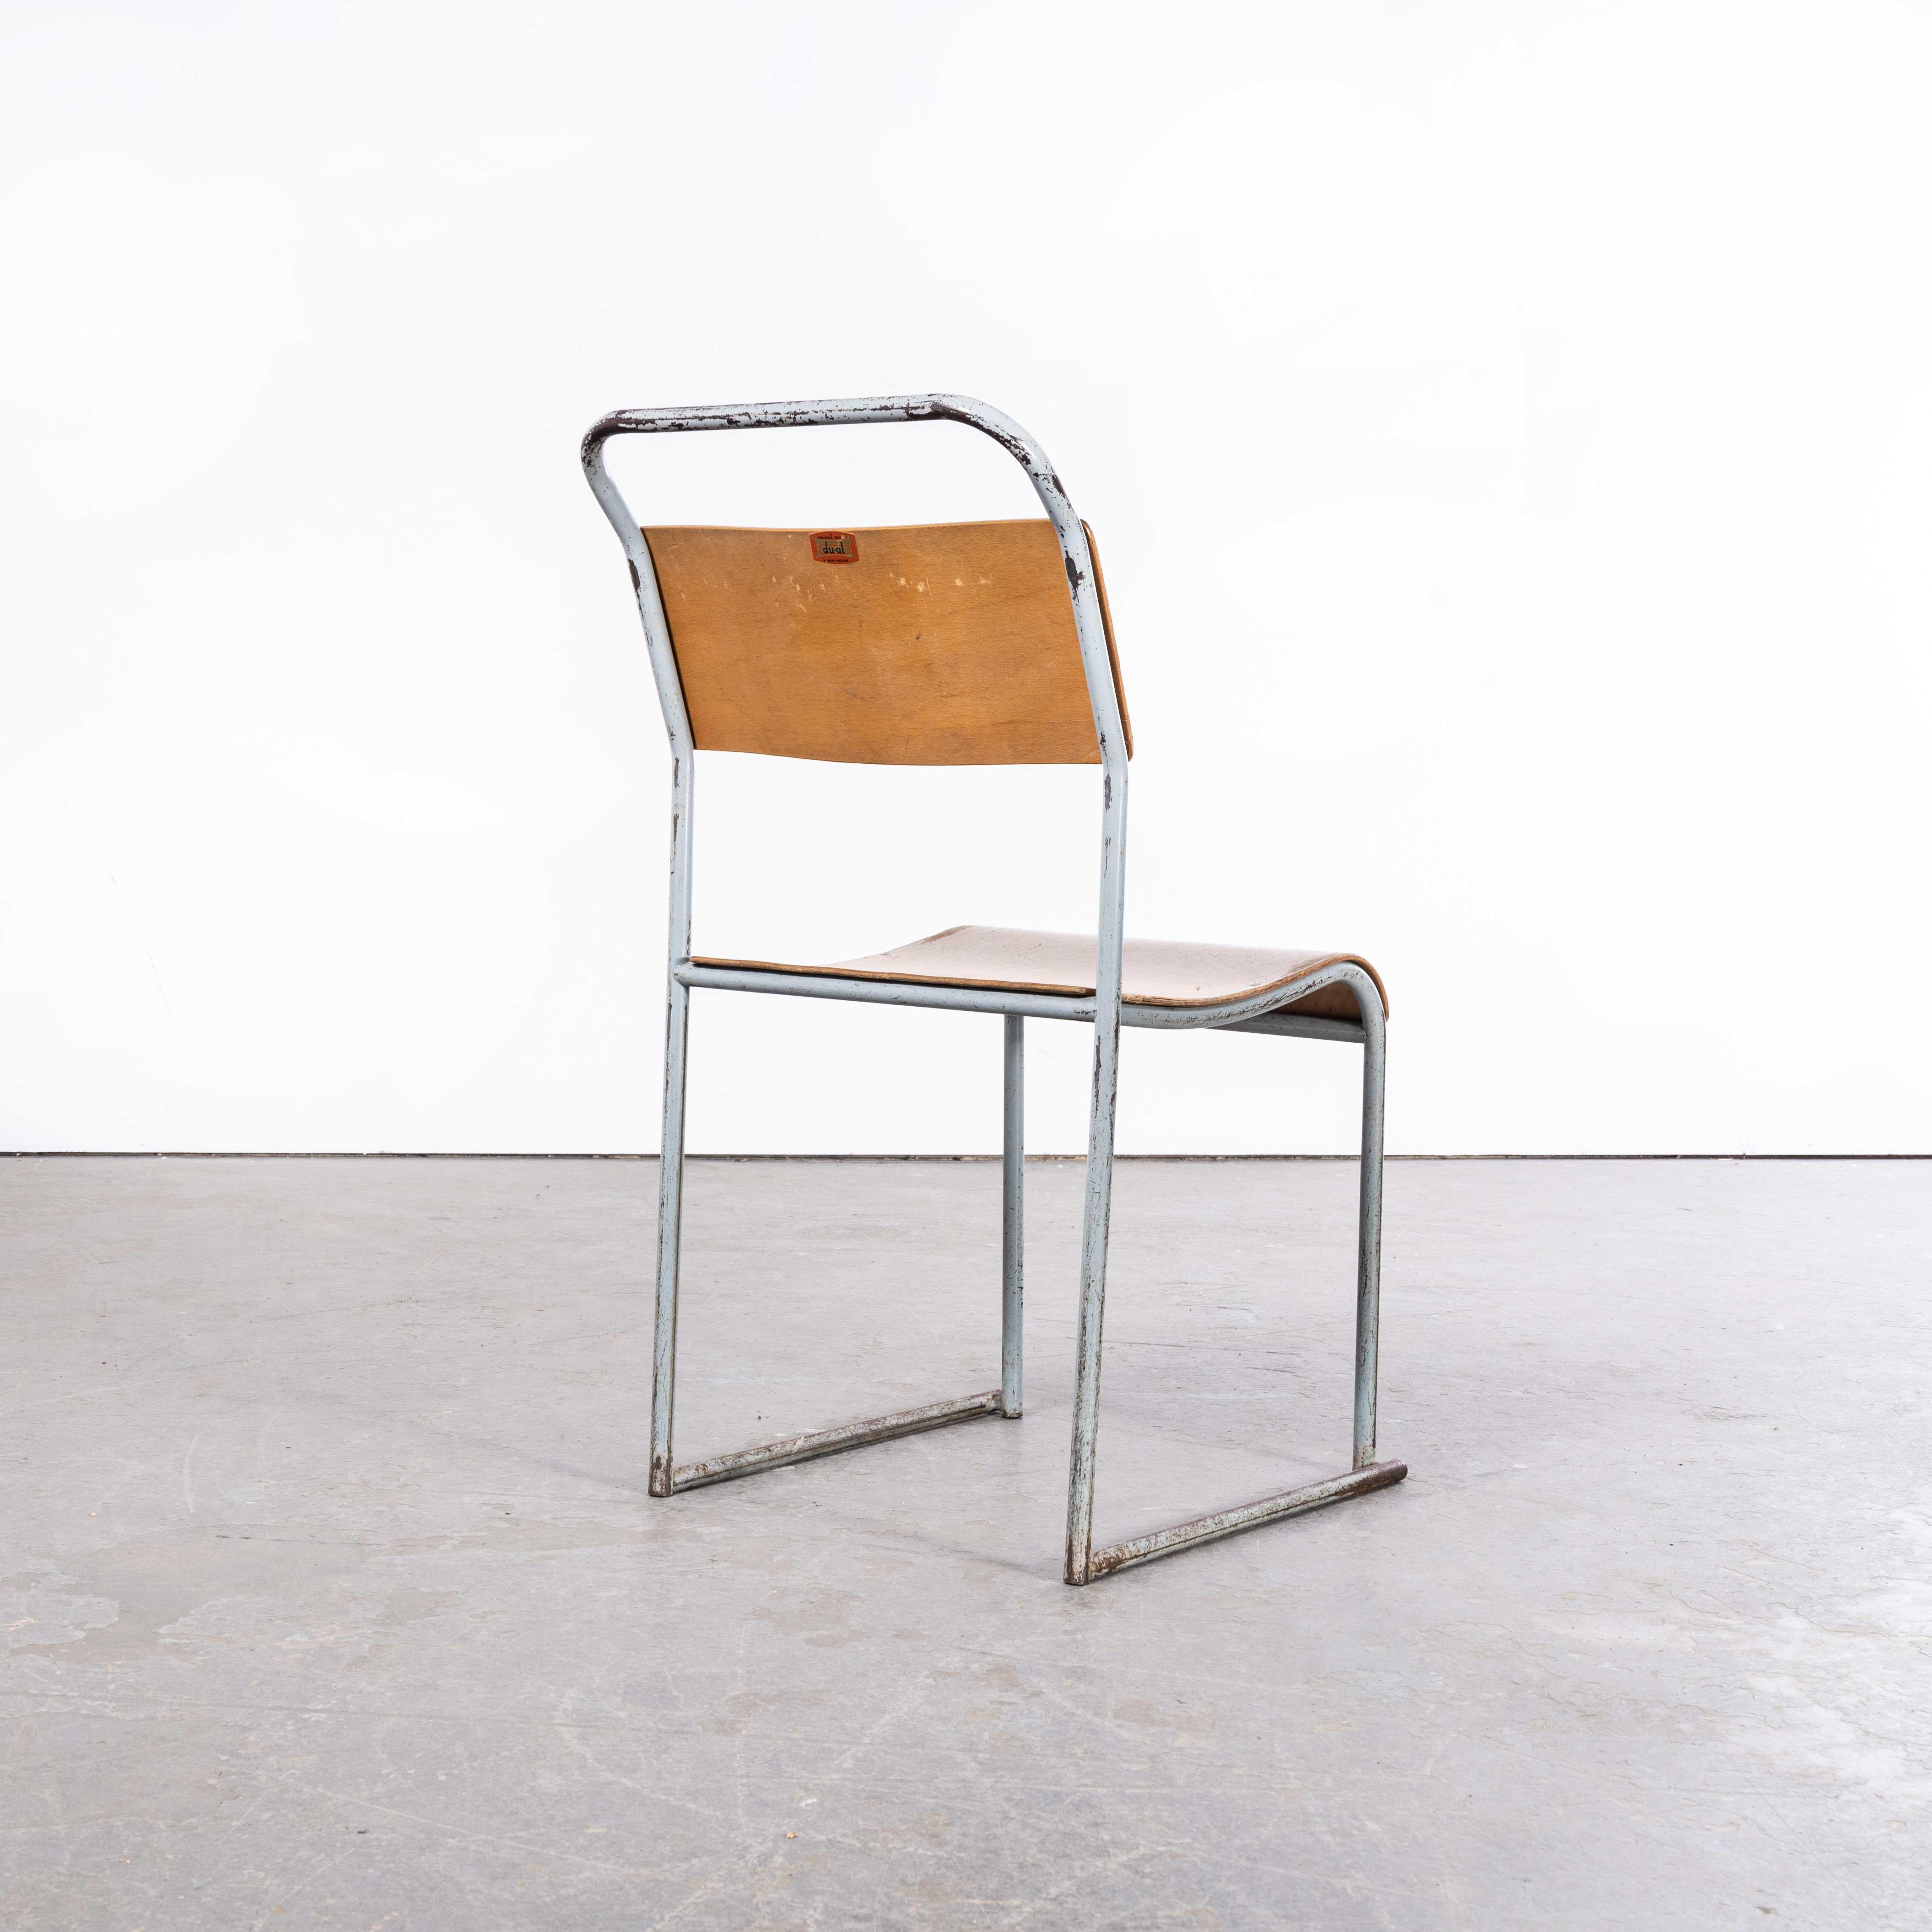 Duale graue Metall-Esszimmerstühle aus den 1950er Jahren - Satz von sechs Stühlen
1950's Dual Tubular Metal Grey Dining Chairs - Set von sechs. Einer der britischen Stuhlklassiker aller Zeiten, inspiriert von den zeitgenössischen Entwürfen des